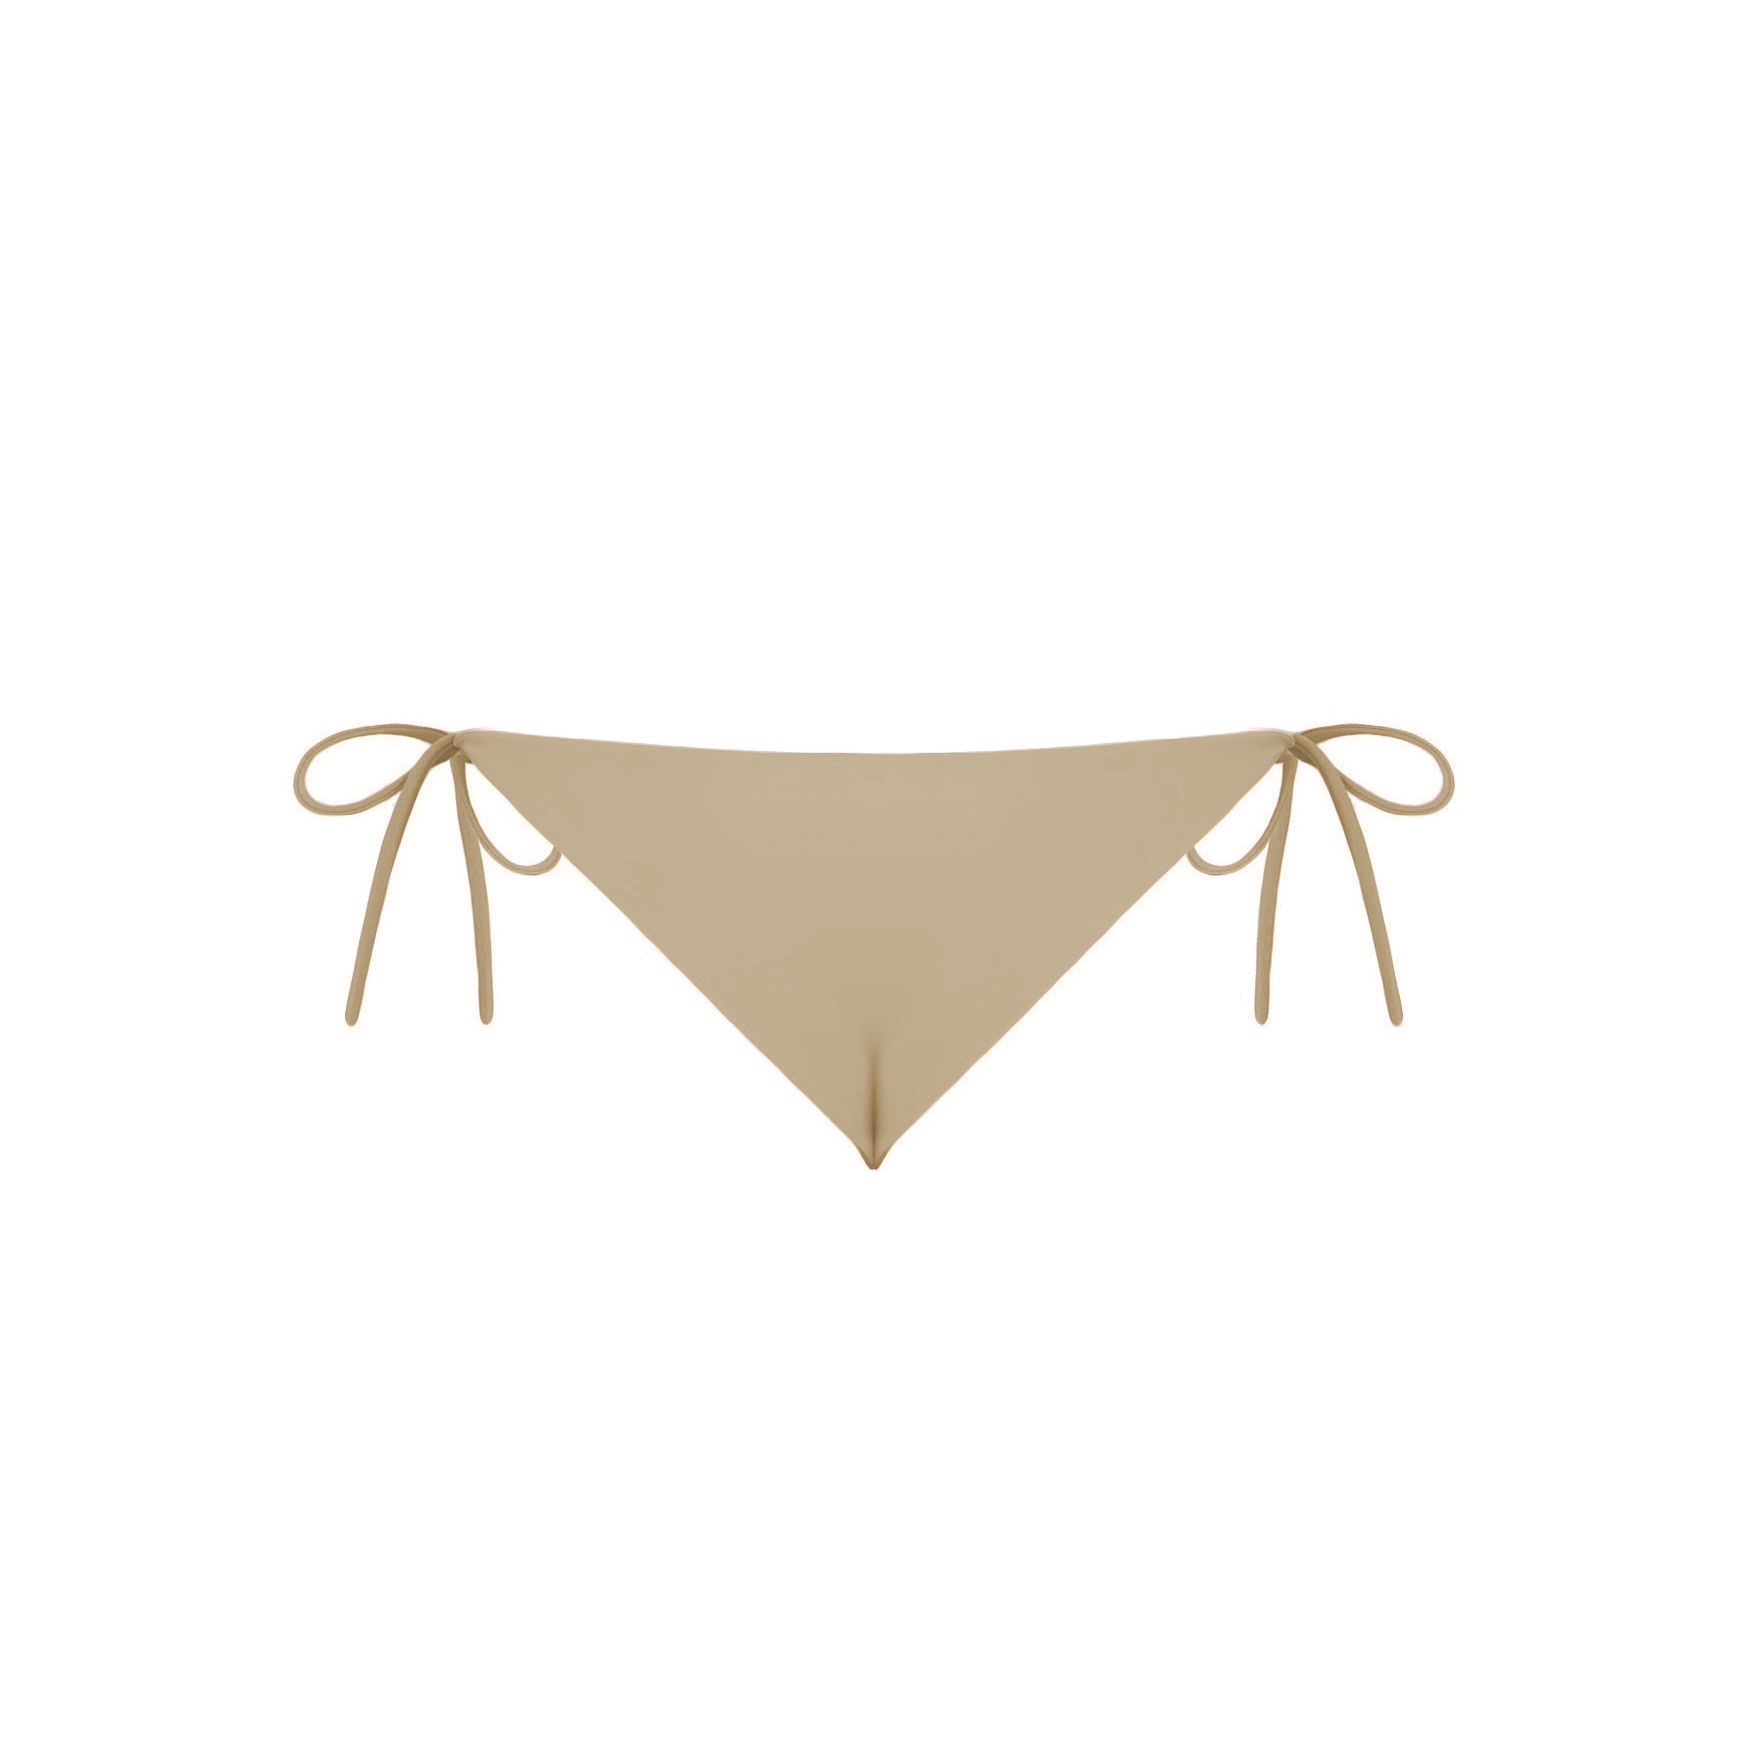 acaia-top-bikini-tied-góra-trójkąty-beżowy-sand -długie-paseczki-sznureczki-kokardki-bikini-acaia- polska marka swimwer bikini bottom brazilian beige